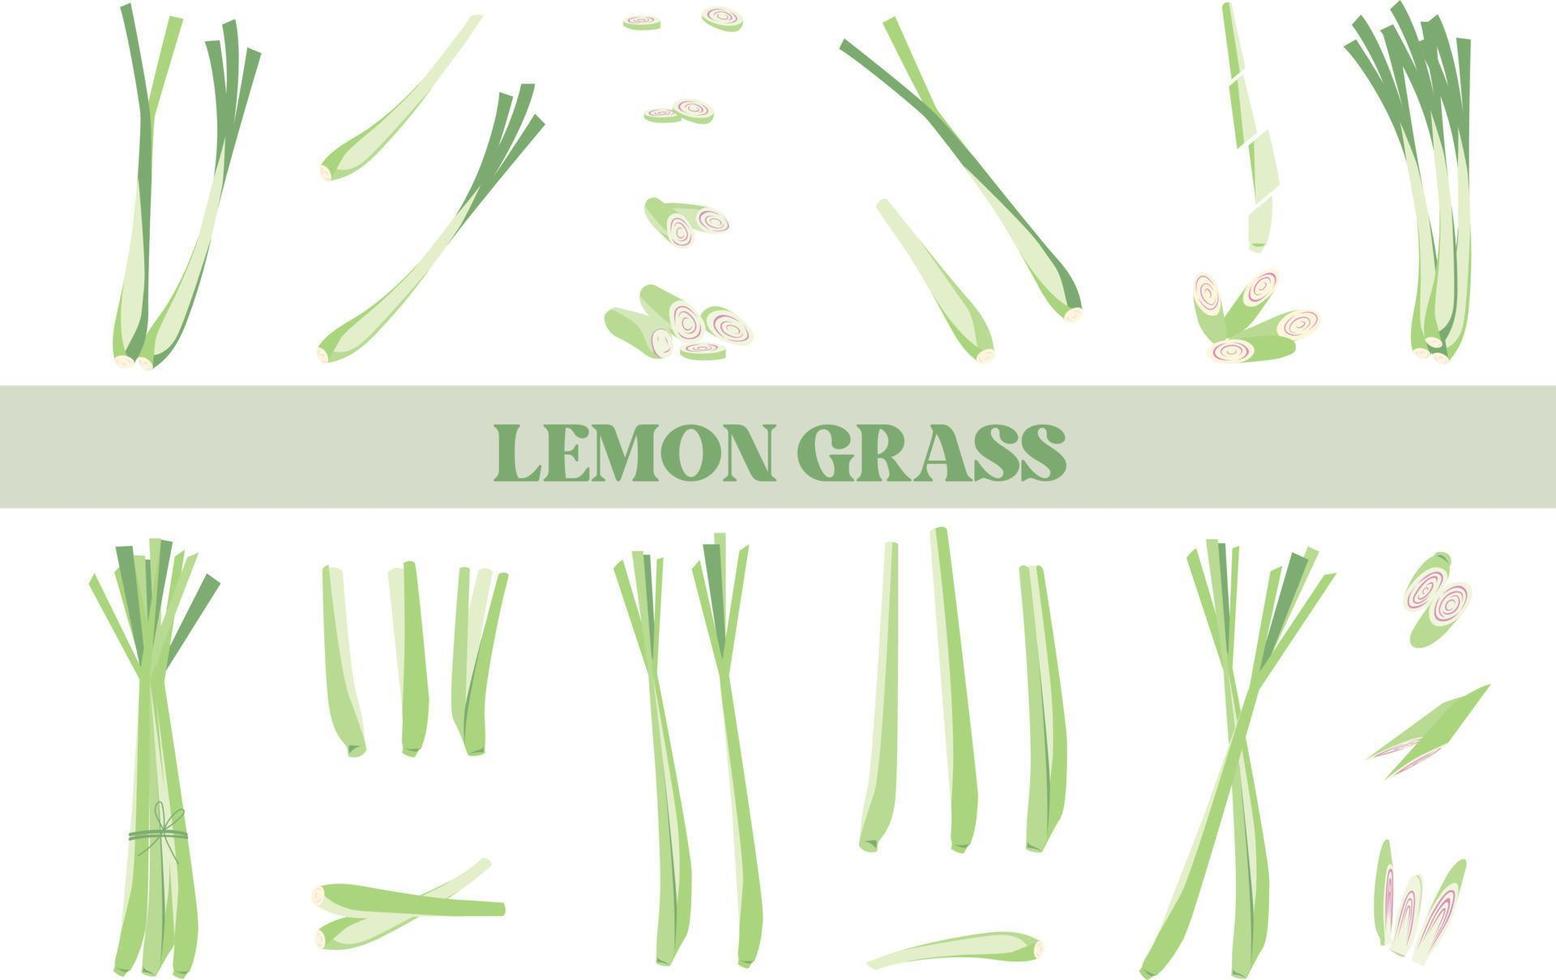 hierba de limón ilustración aislada dibujada a mano vector